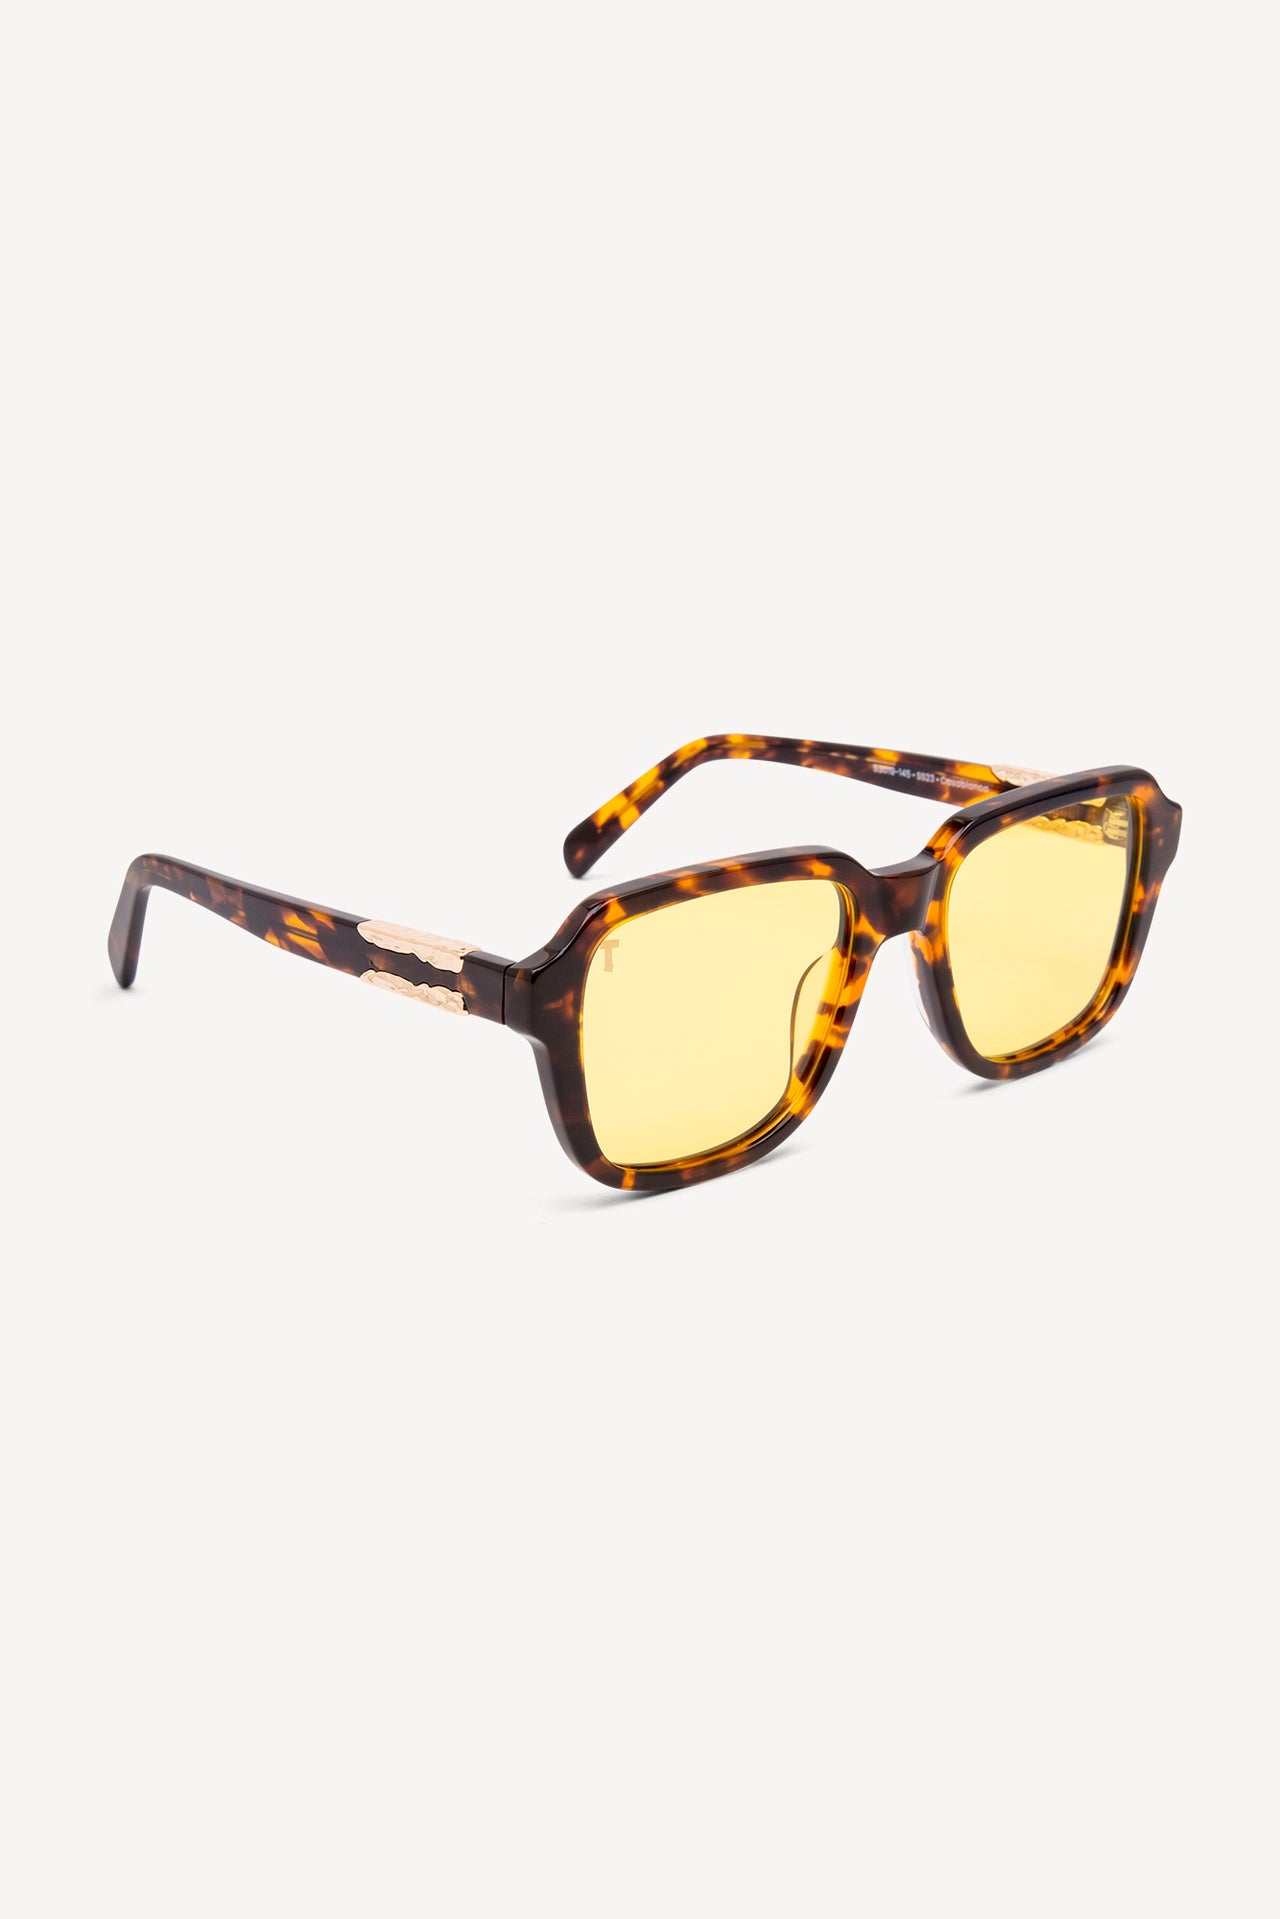 TOATIE Casablanca Square Sunglasses TORTOISE/YELLOW